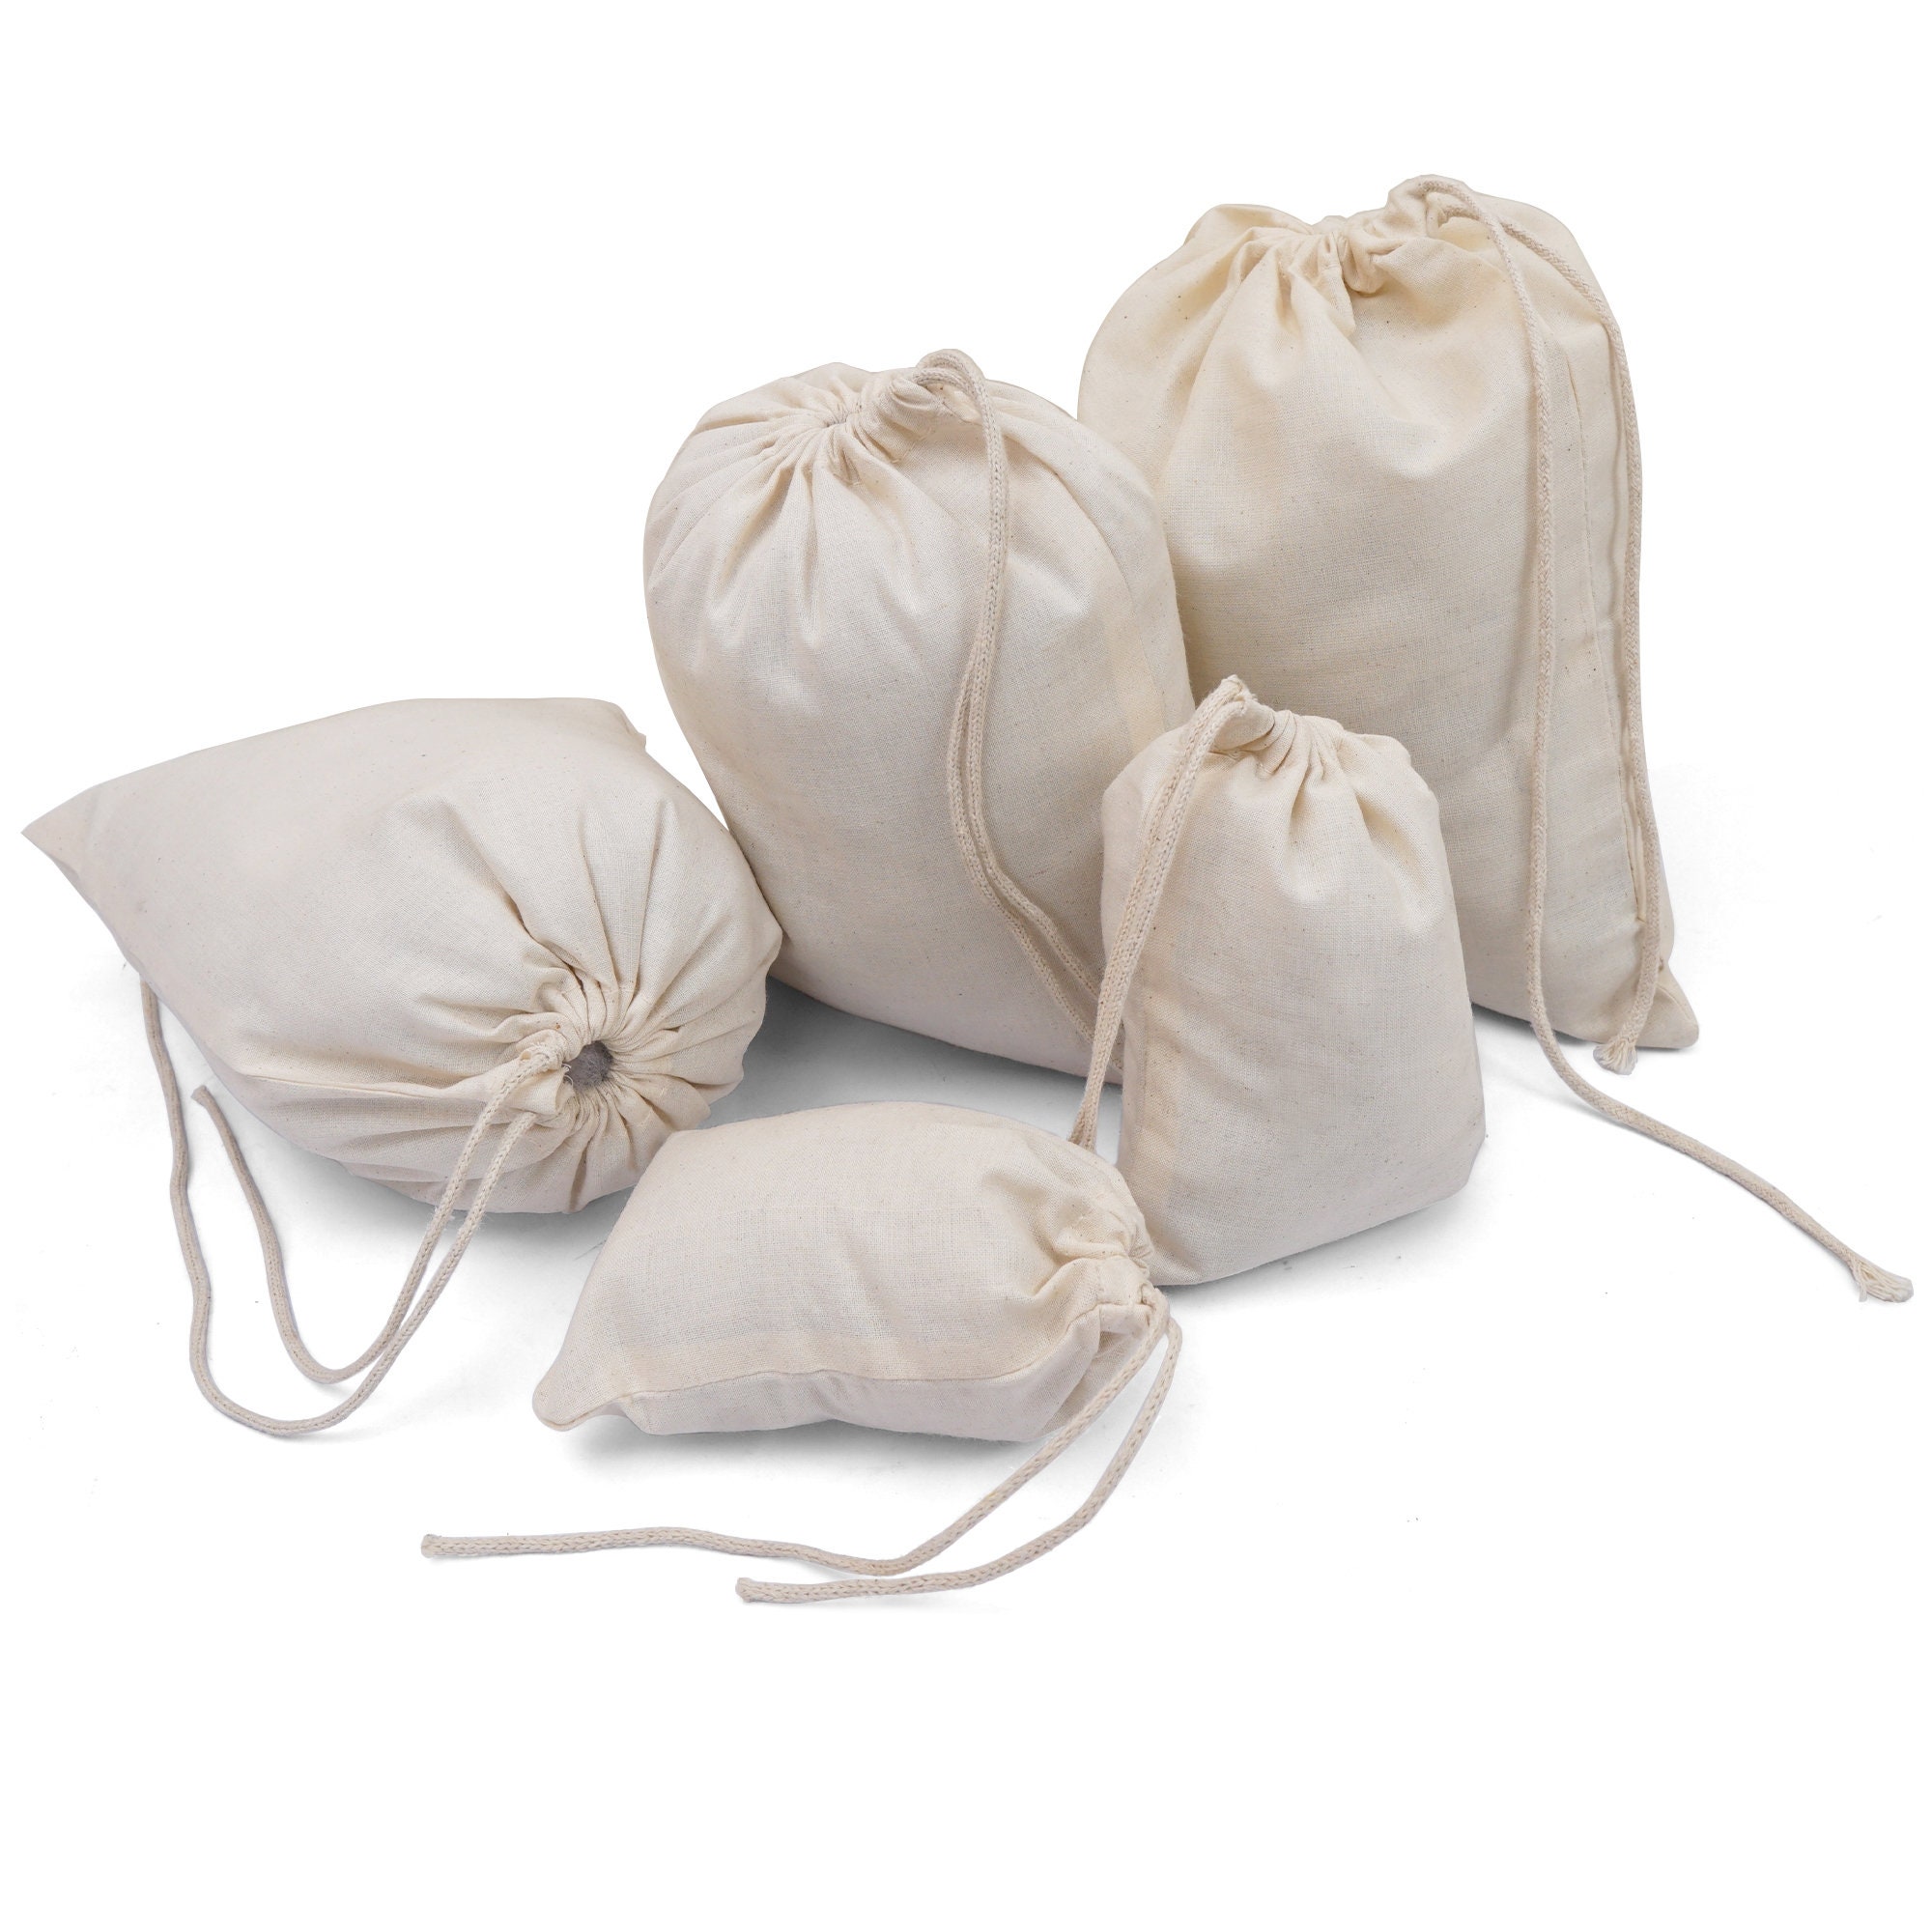 Premium Cotton Tote Bags - 100 count